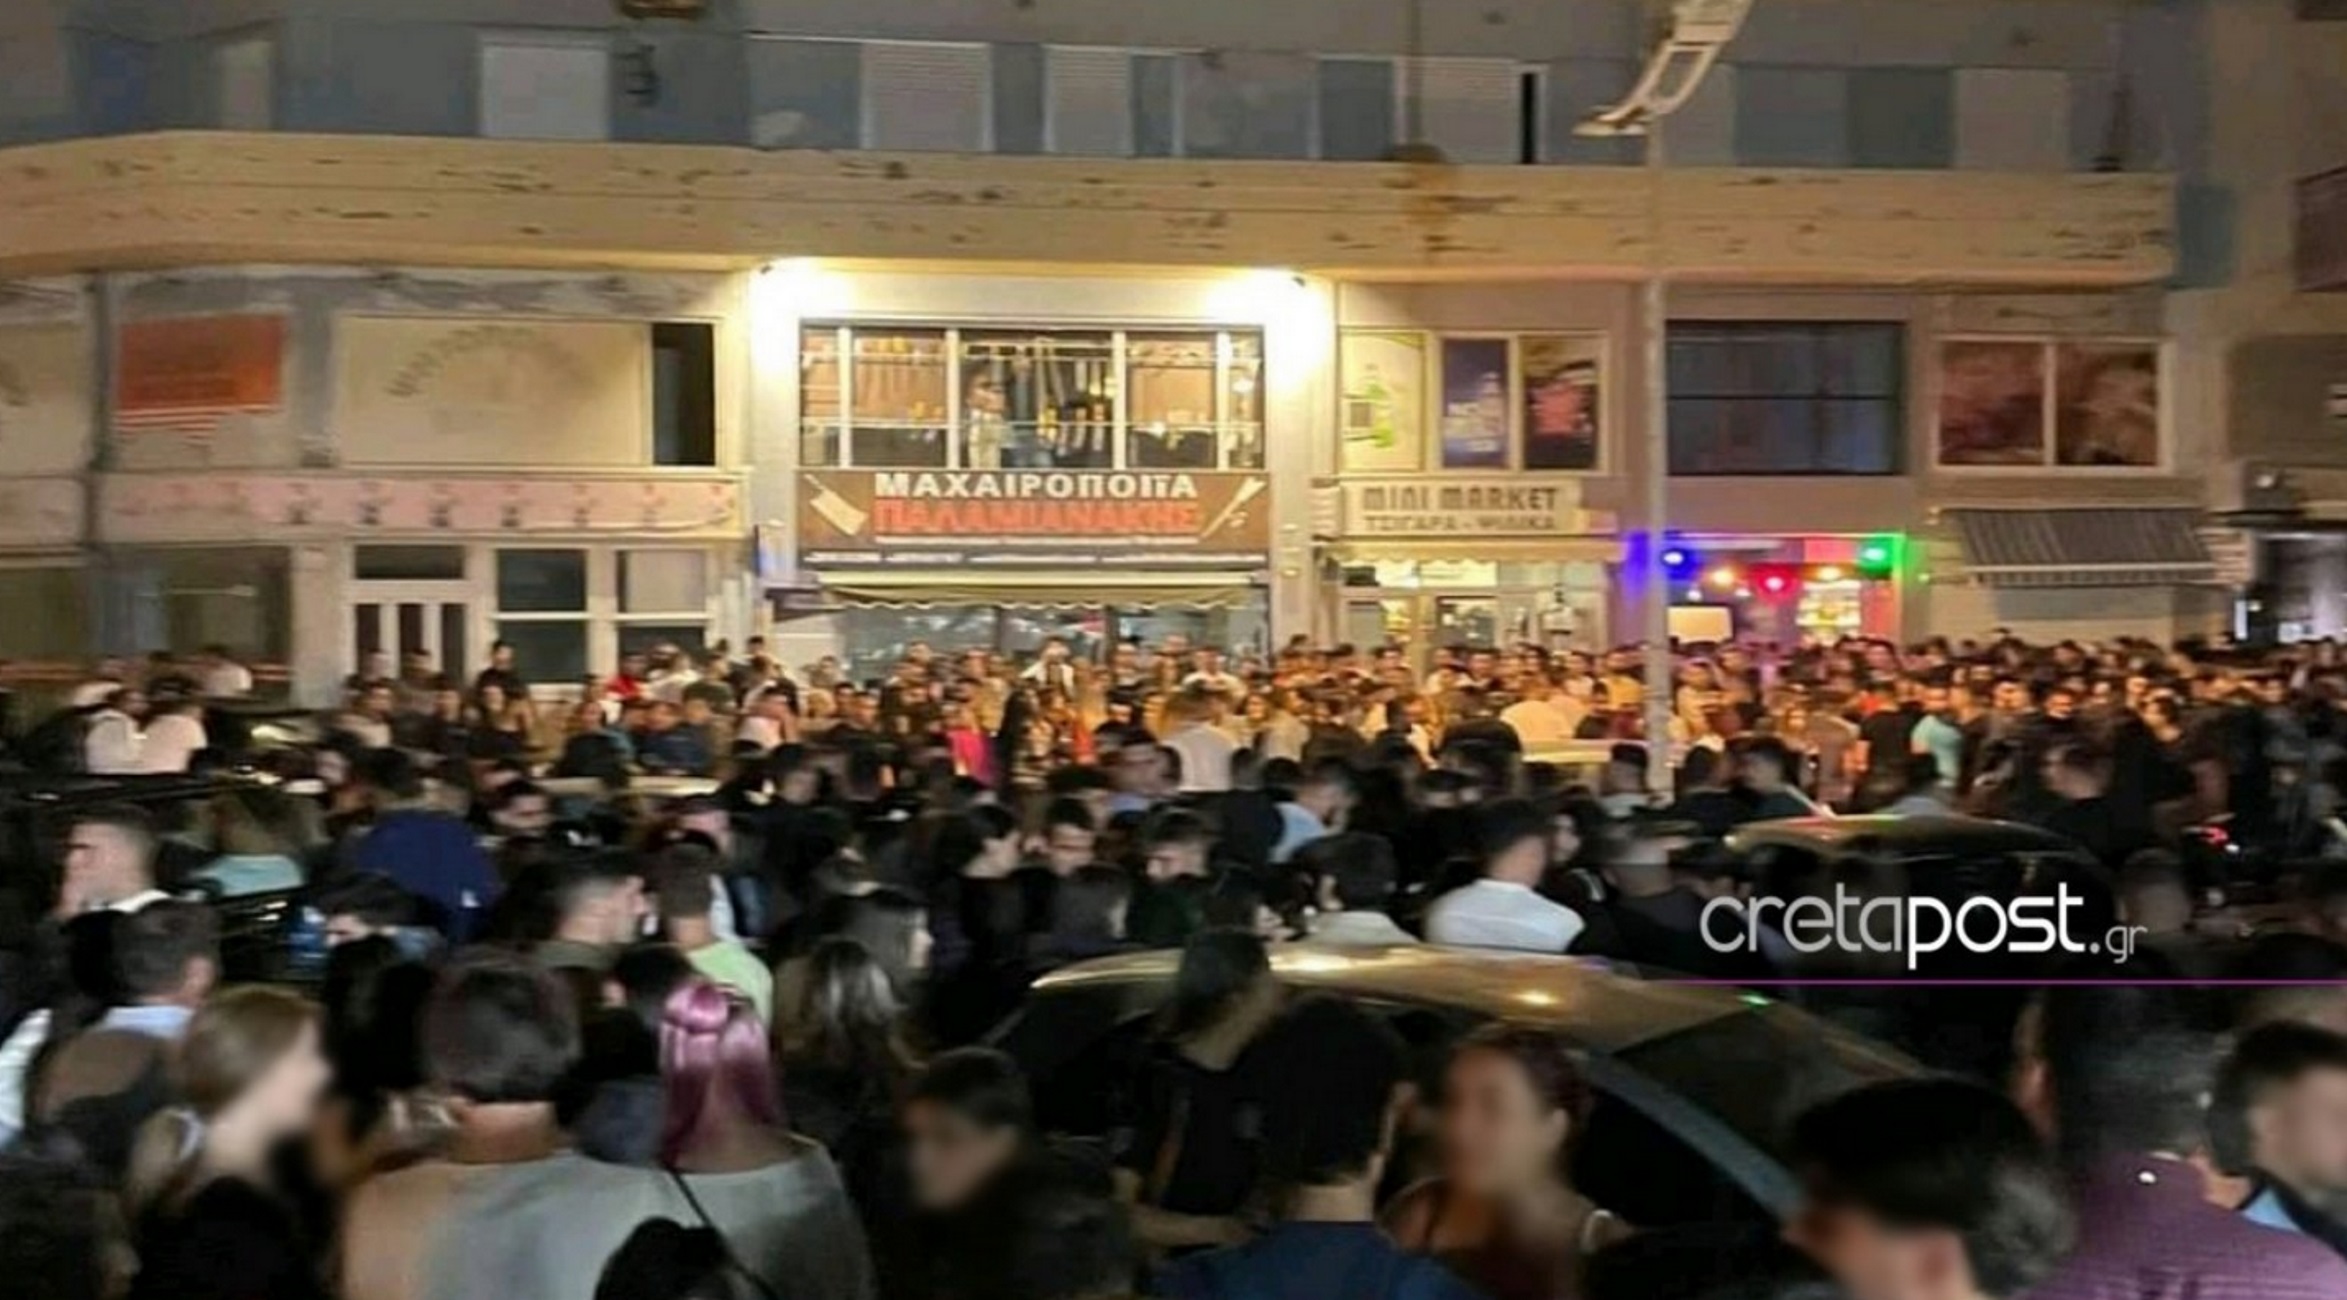 Κορονοπάρτι: Μιλιούνια αδιάφορων σε δρόμους και πλατείες – Η αναγκαστική «μετακόμιση» που συζητήθηκε